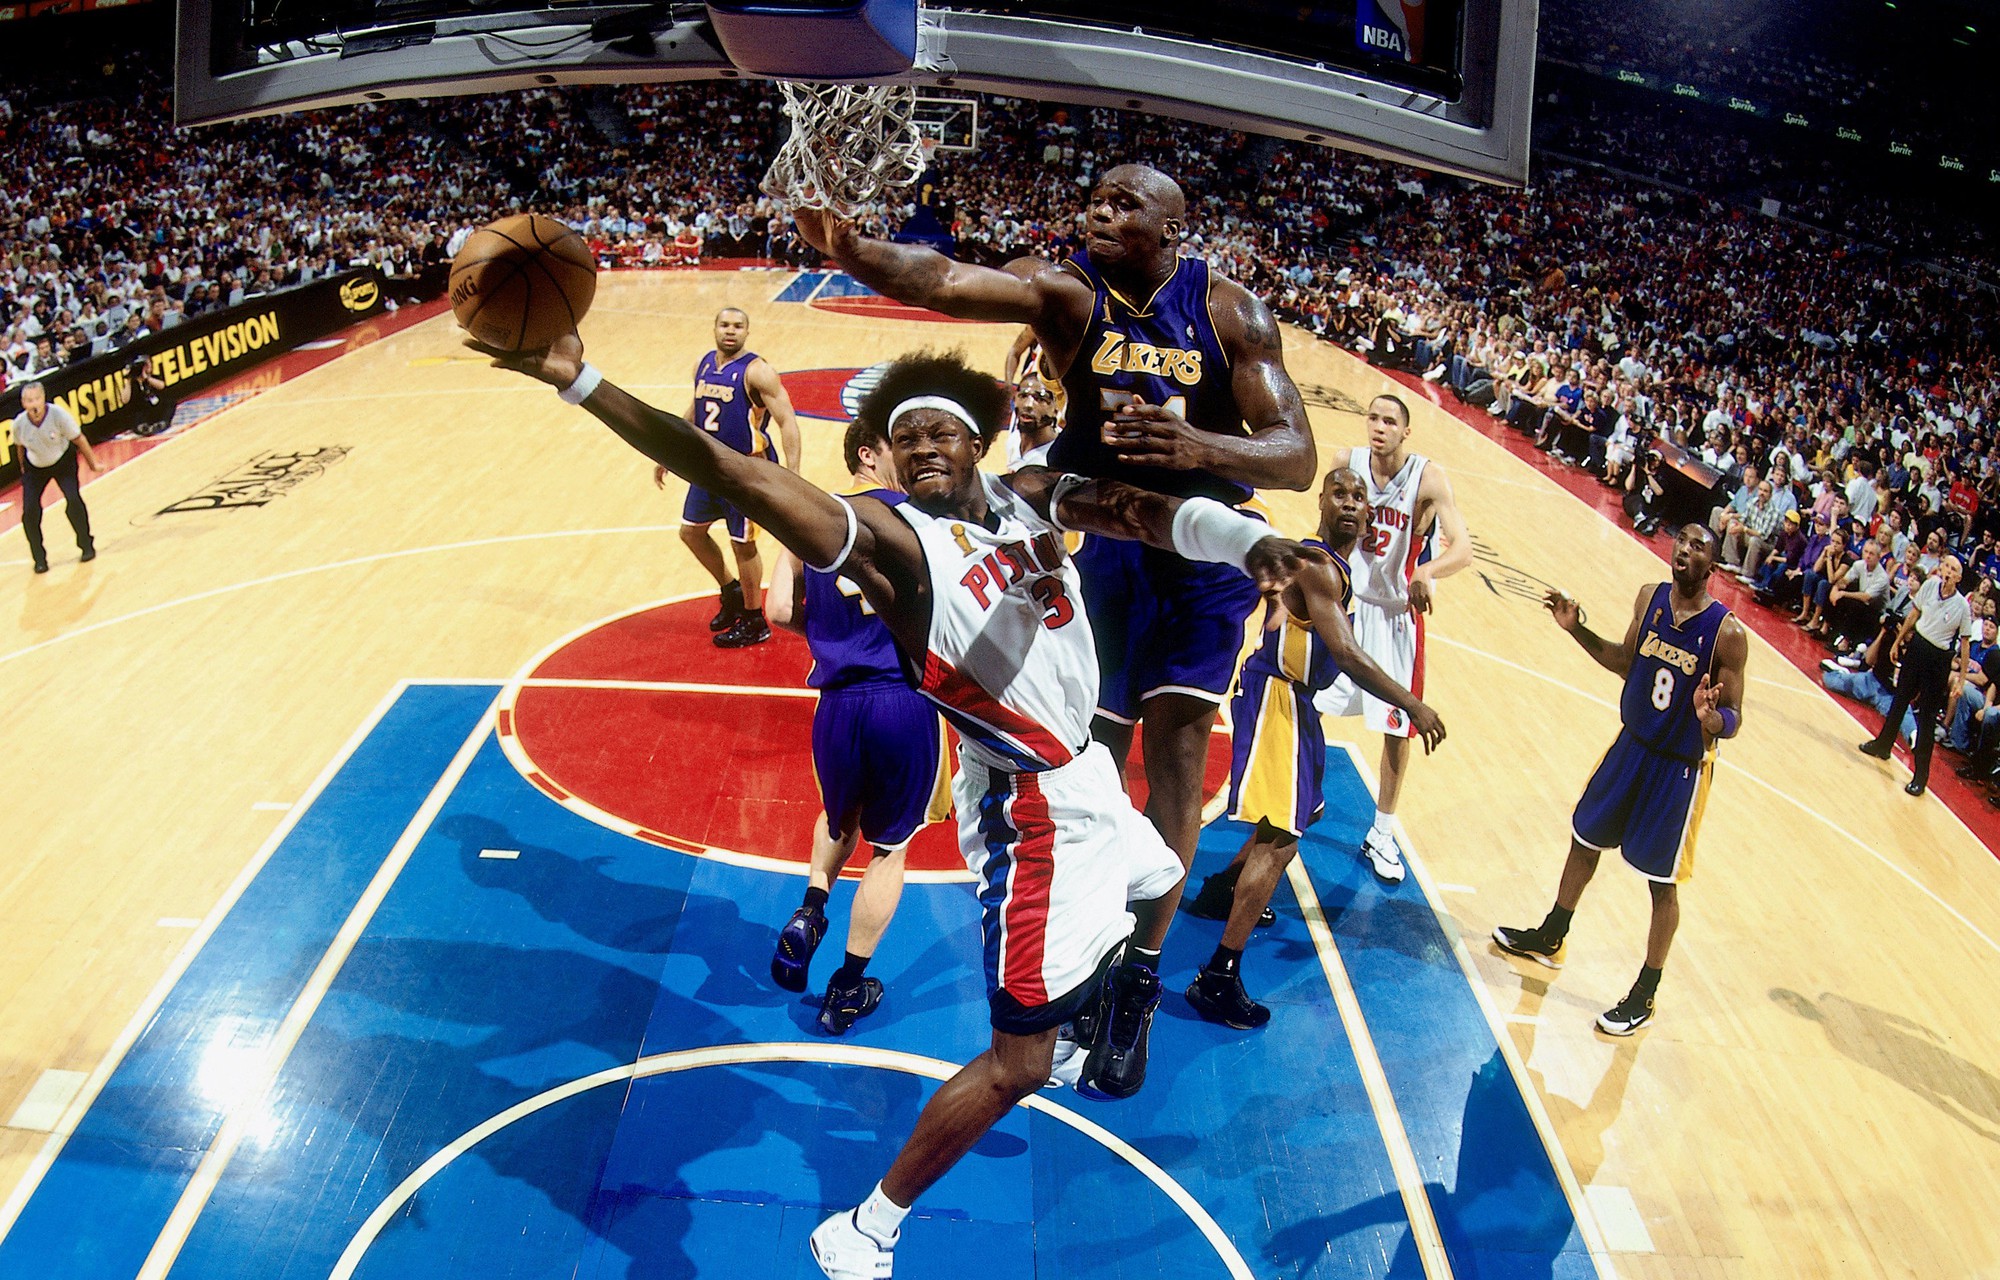 Trong khi cả NBA đều ăn mừng sinh nhật Kobe Bryant thì Detroit Pistons lại troll anh - Ảnh 2.